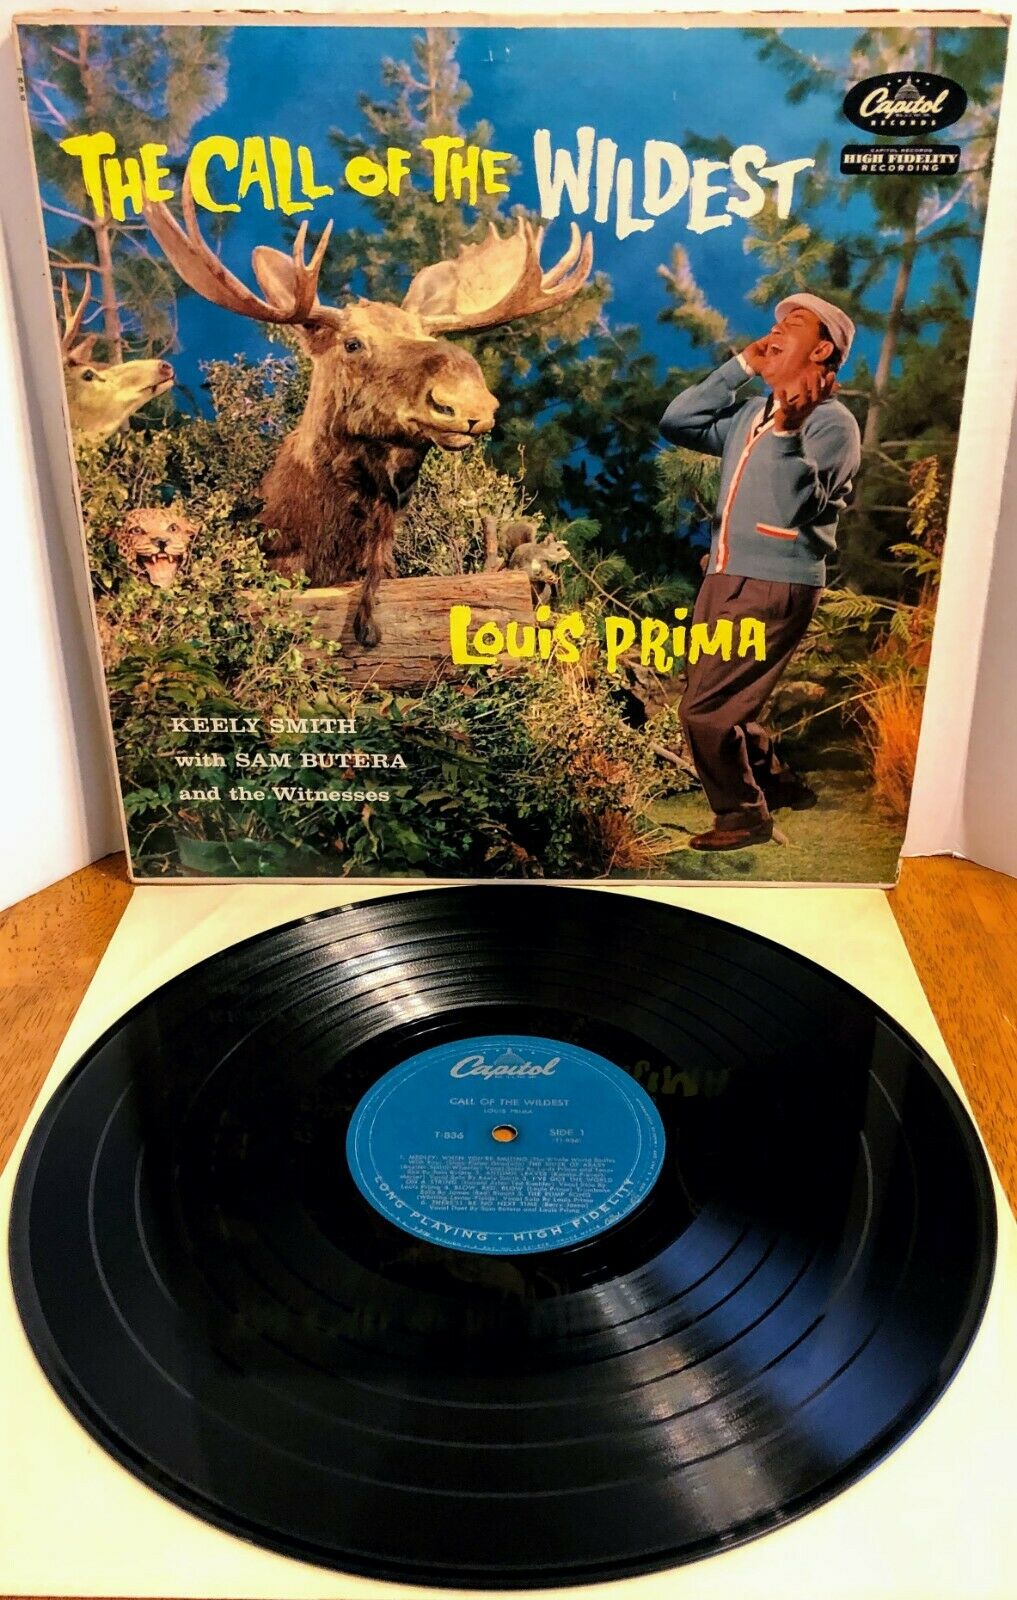 Vinyl Album - Louis Prima - The Wildest! - Capitol - USA